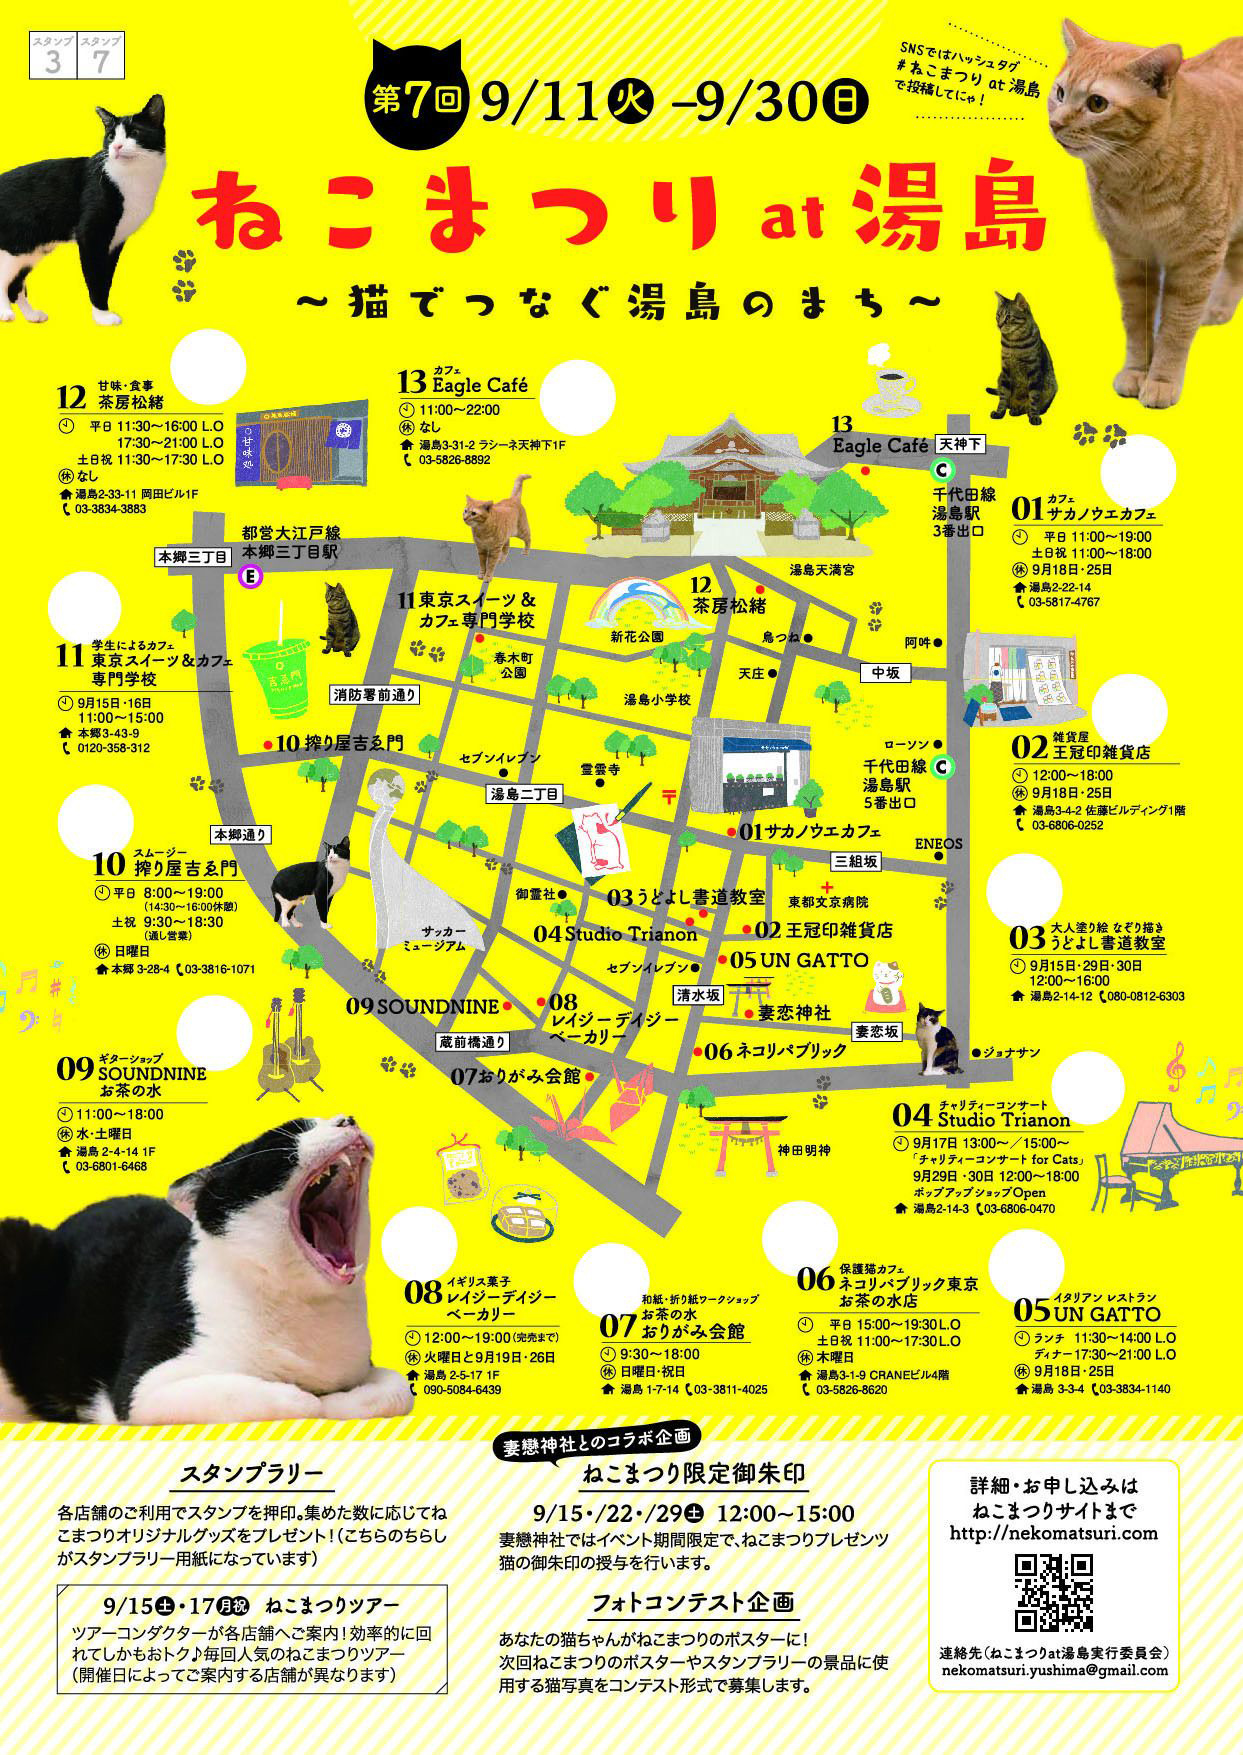 「第7回 ねこまつり at 湯島～猫でつなぐ湯島のまち～」案内マップ（クリックで拡大）